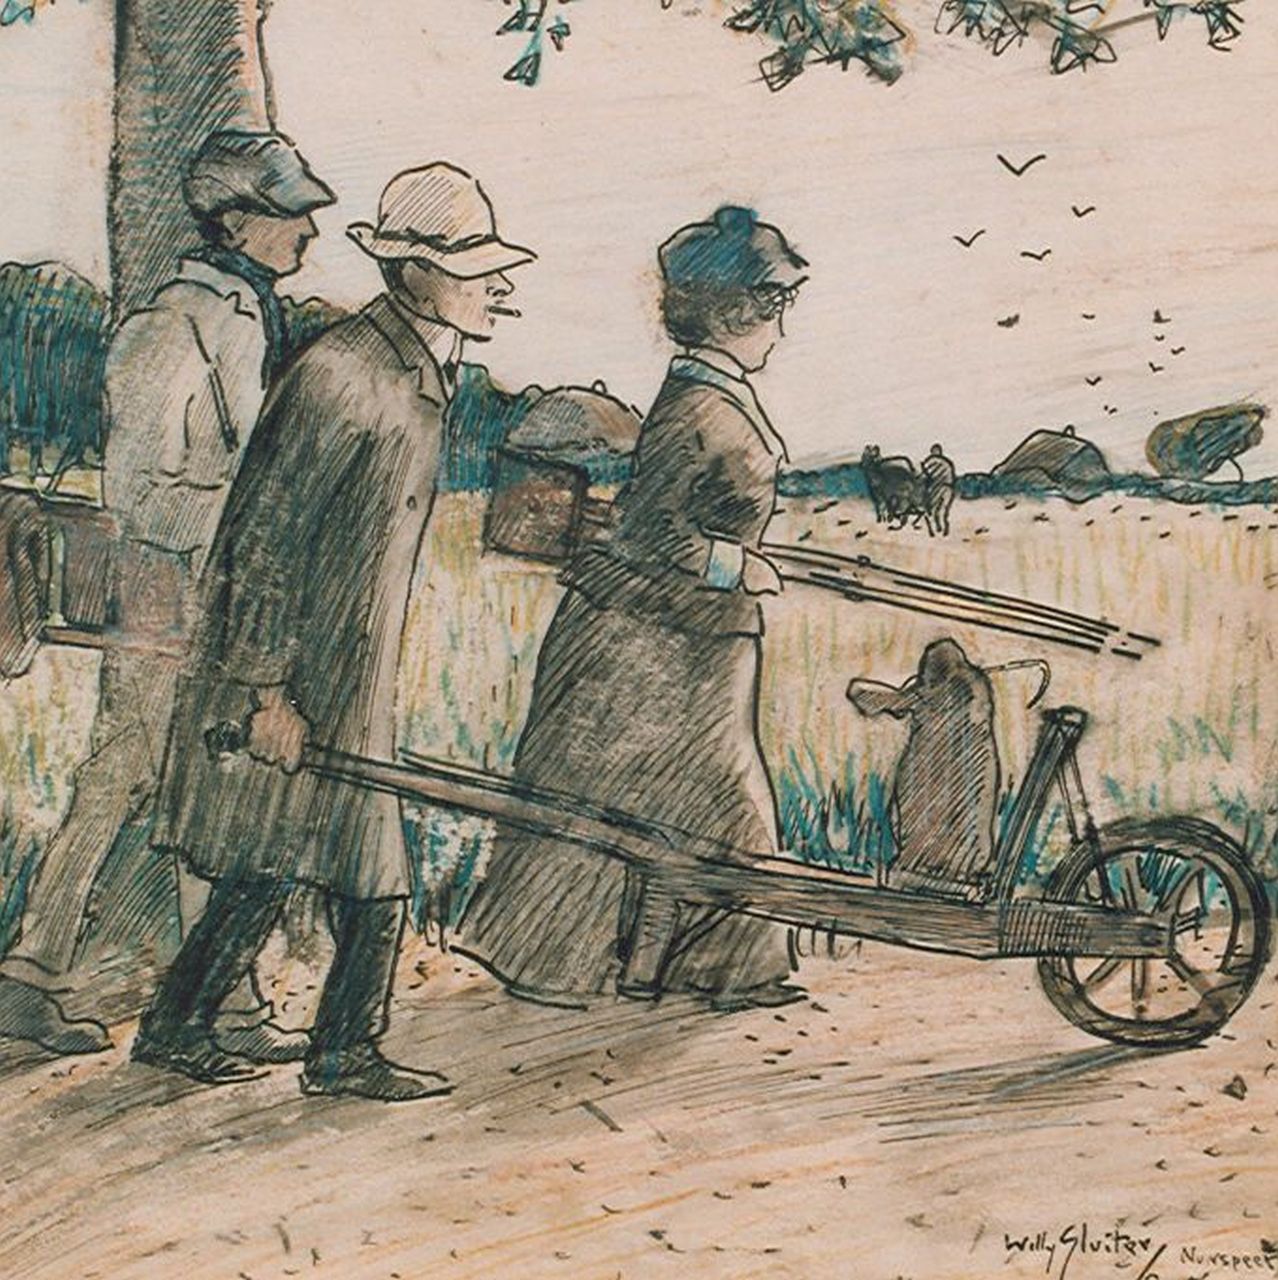 Sluiter J.W.  | Jan Willem 'Willy' Sluiter, 'C. en A. van Wijk en W. Sluiter', Ausziehtusche und Kreide auf Papier 23,8 x 23,8 cm, signed l.r. und dated 1905